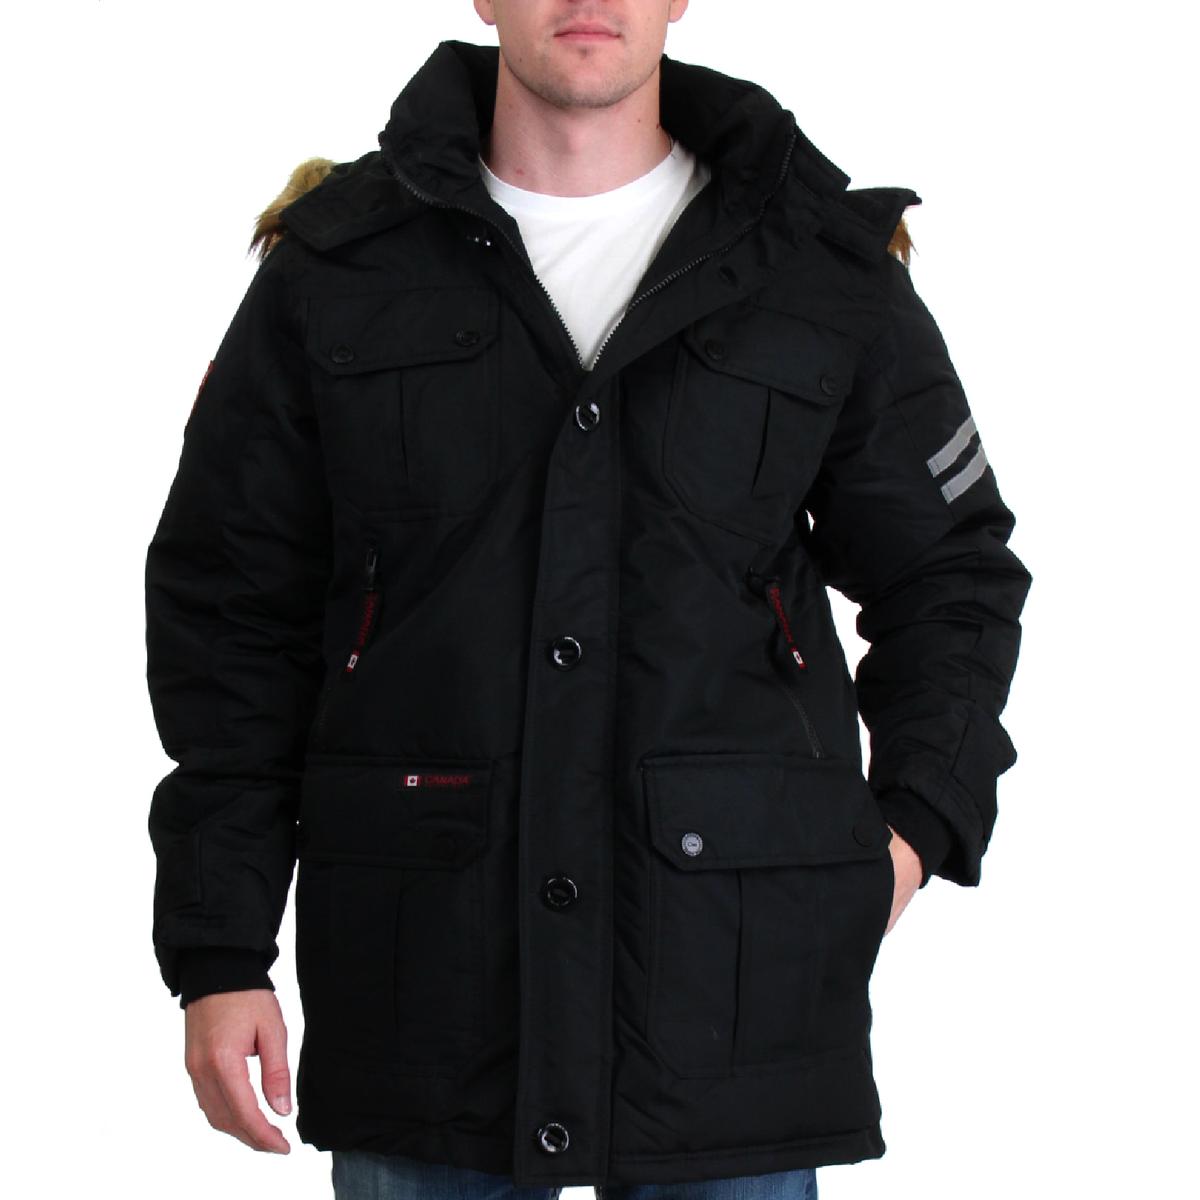 Canada Weather Gear Mens Black Waterproof Parka Coat Outerwear 2XL BHFO